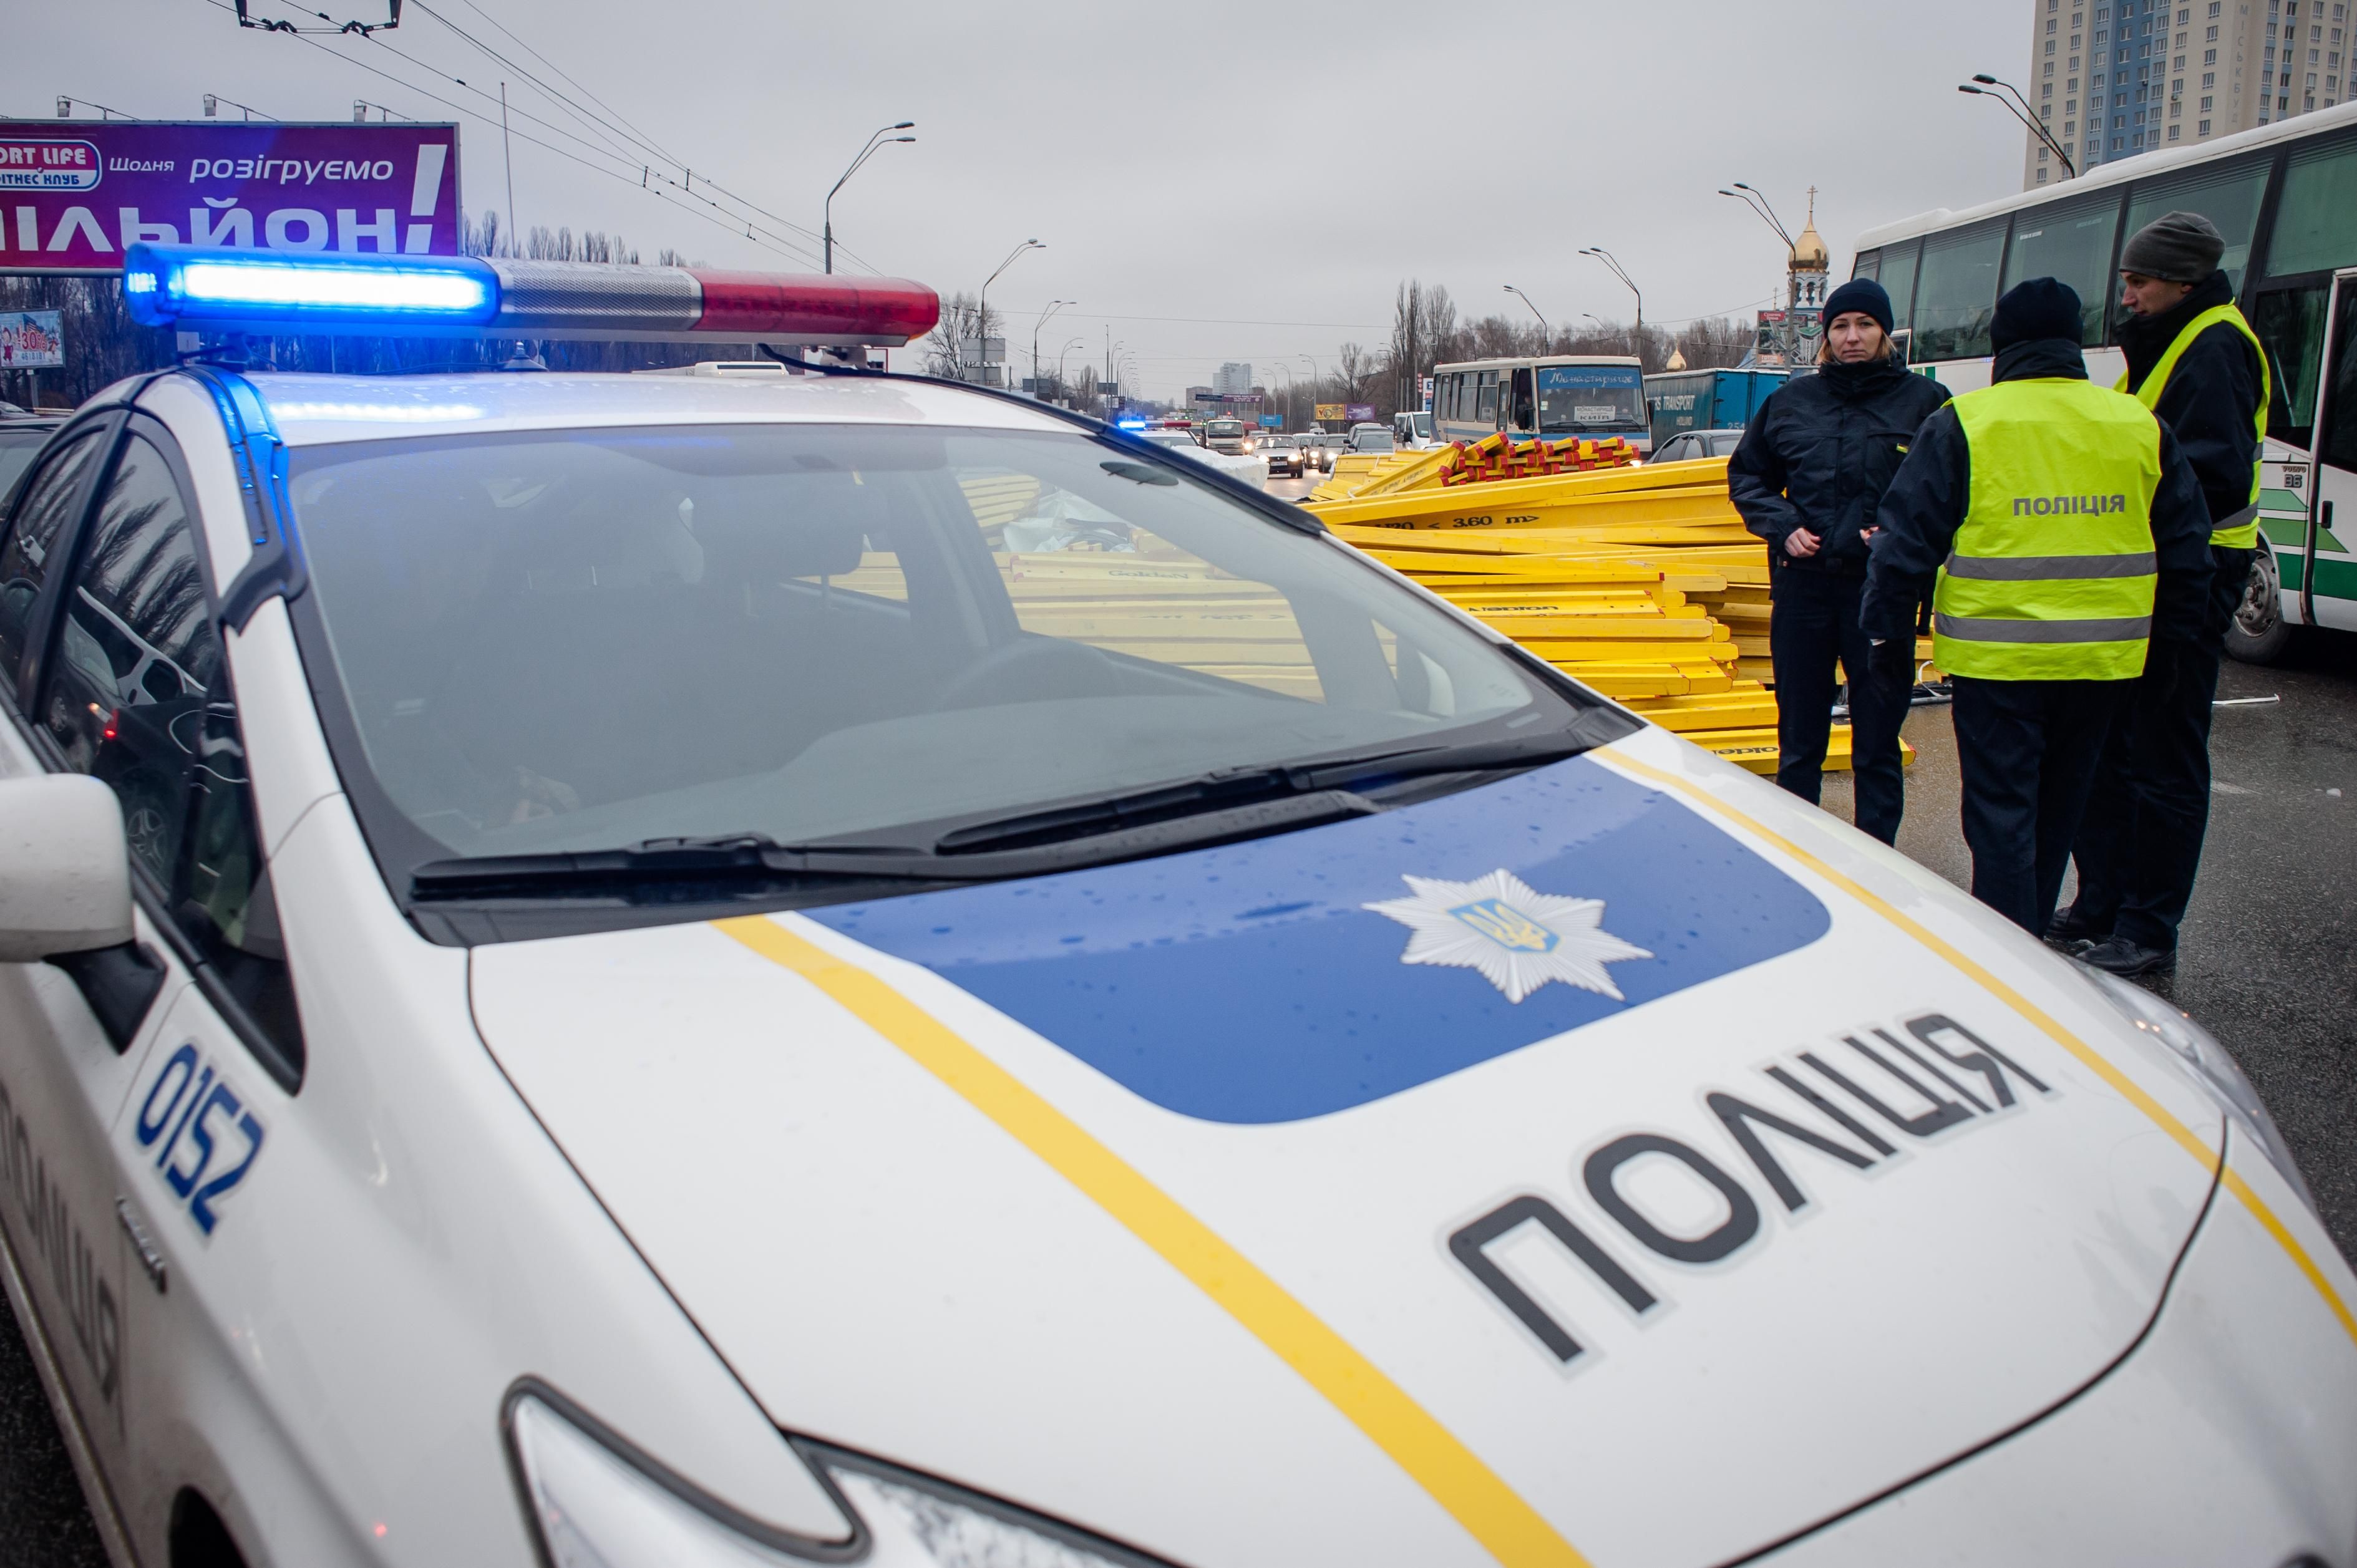 Скандал во Франковске: патрульных, которые остановили пьяного экс-полковника, отстранили от работы